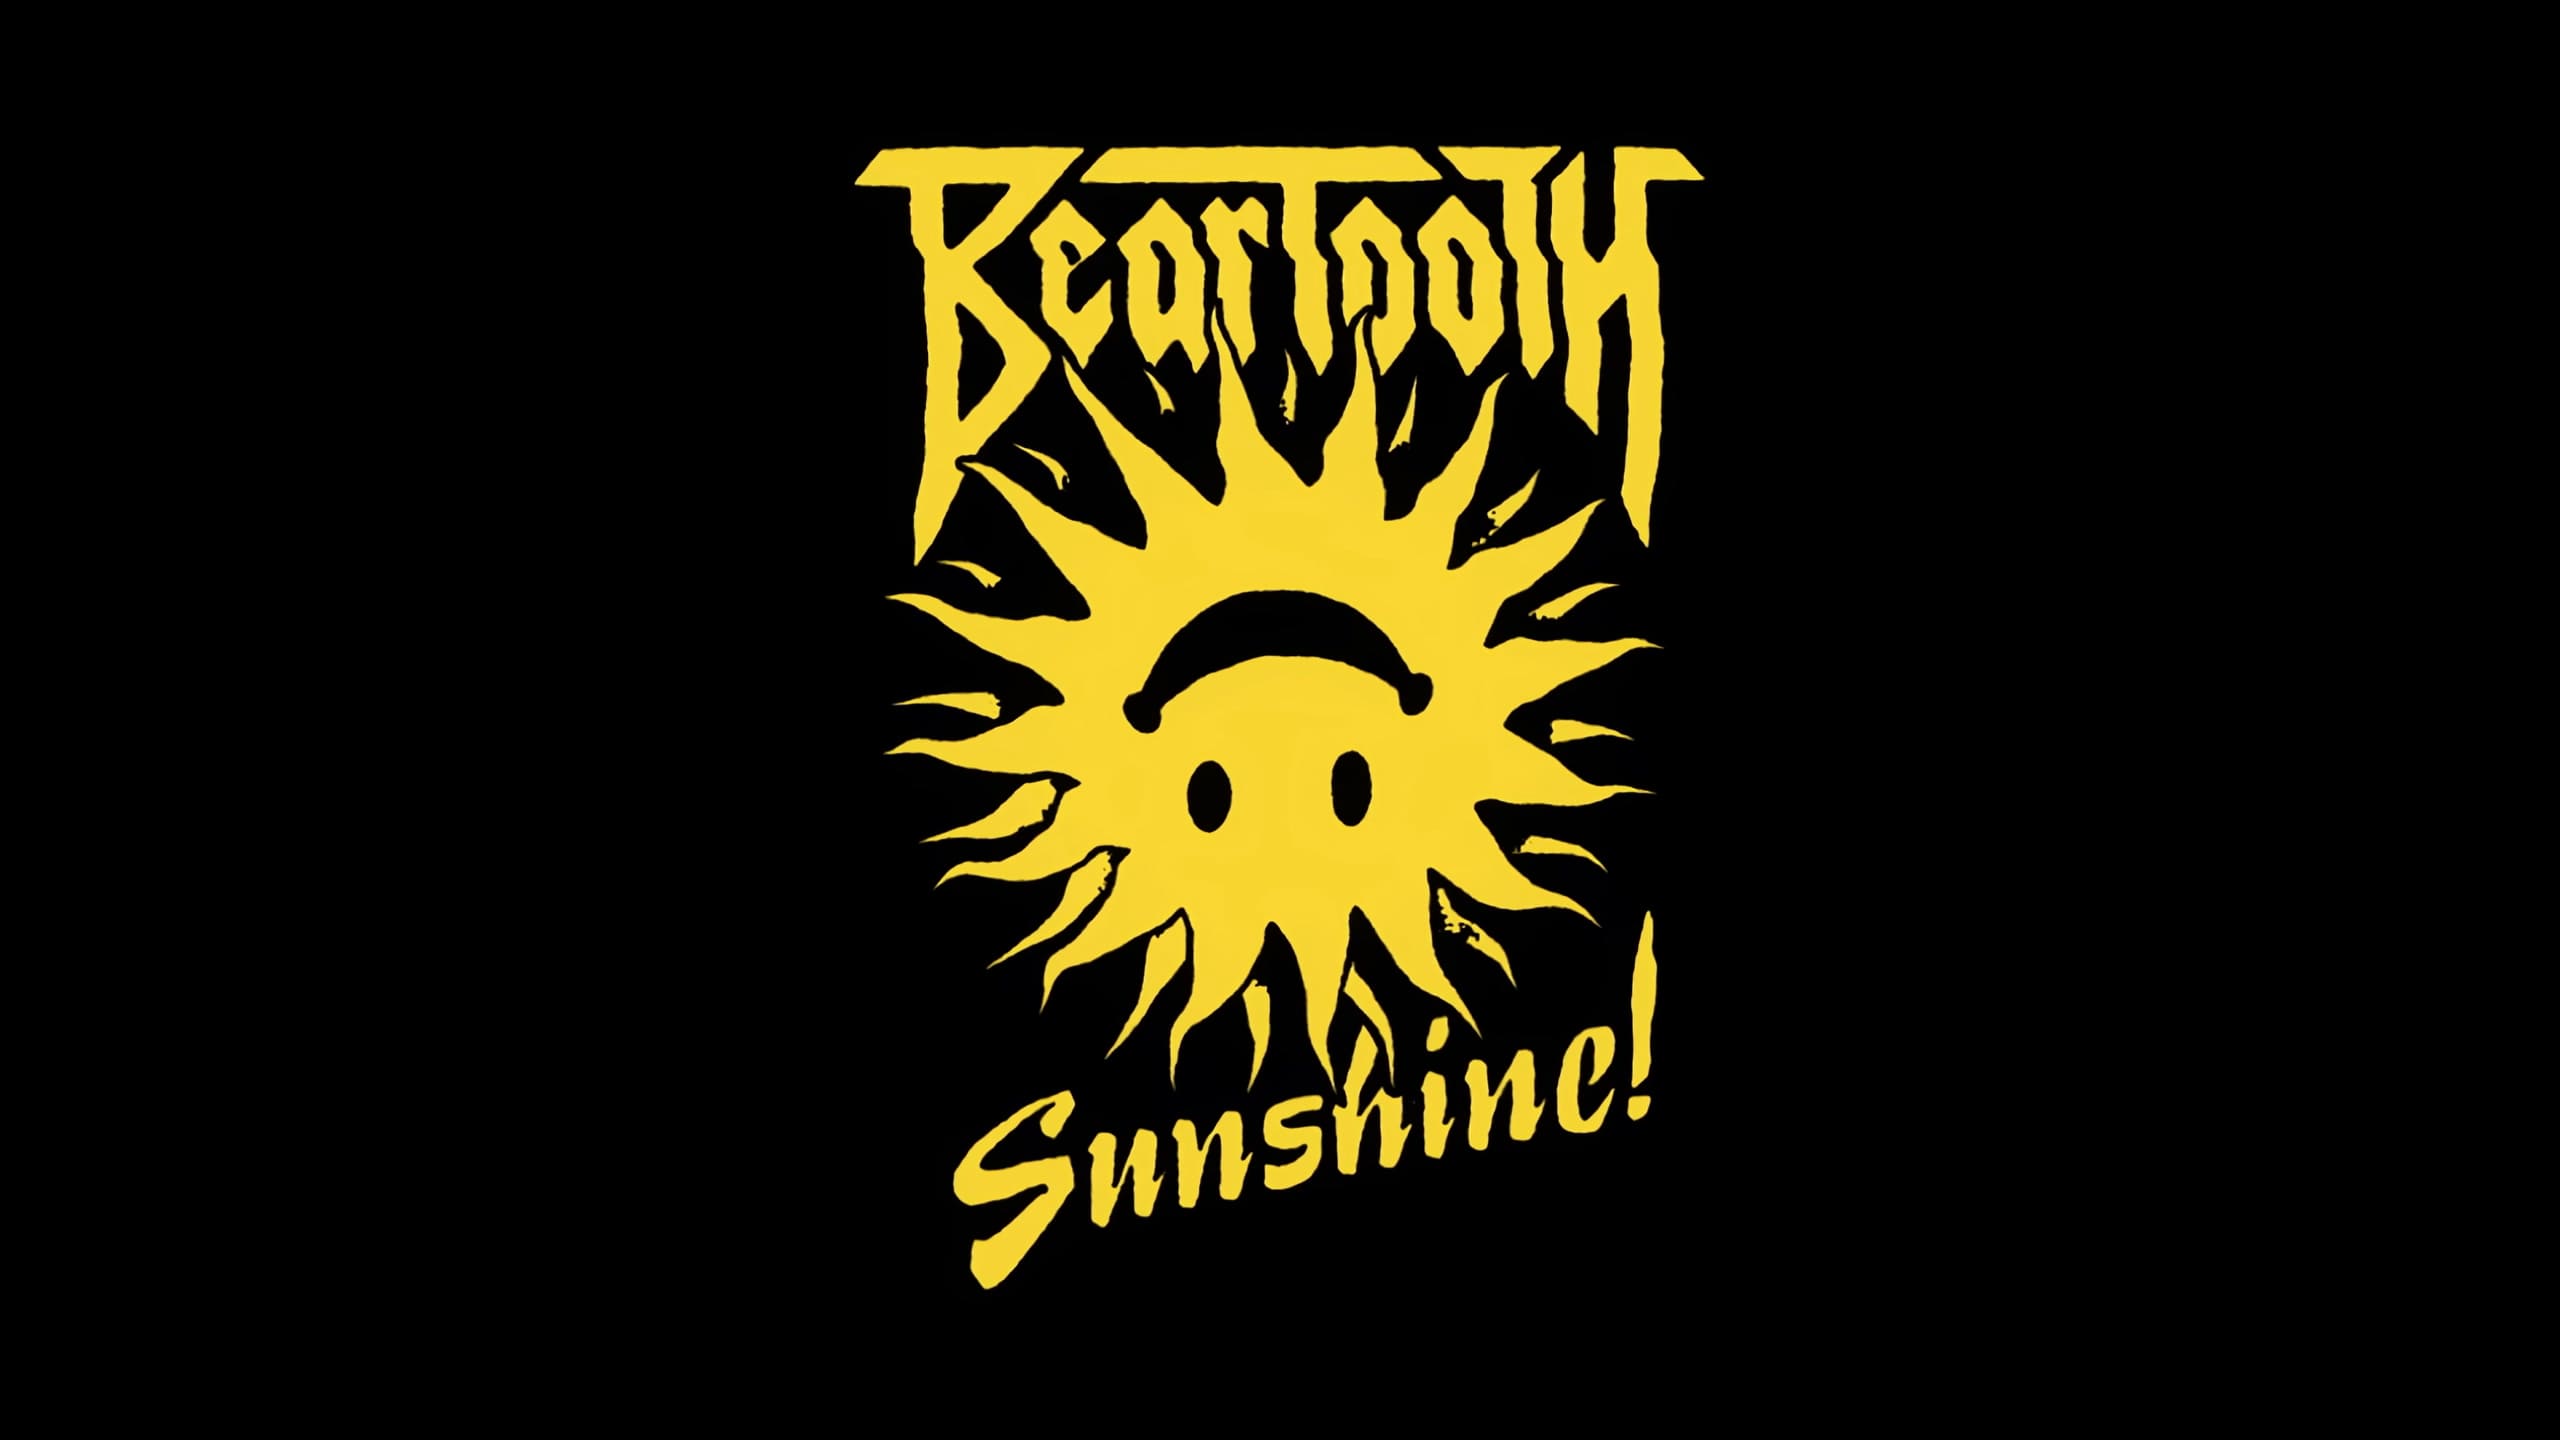 Sunshine! Lyrics - Beartooth - Only on JioSaavn